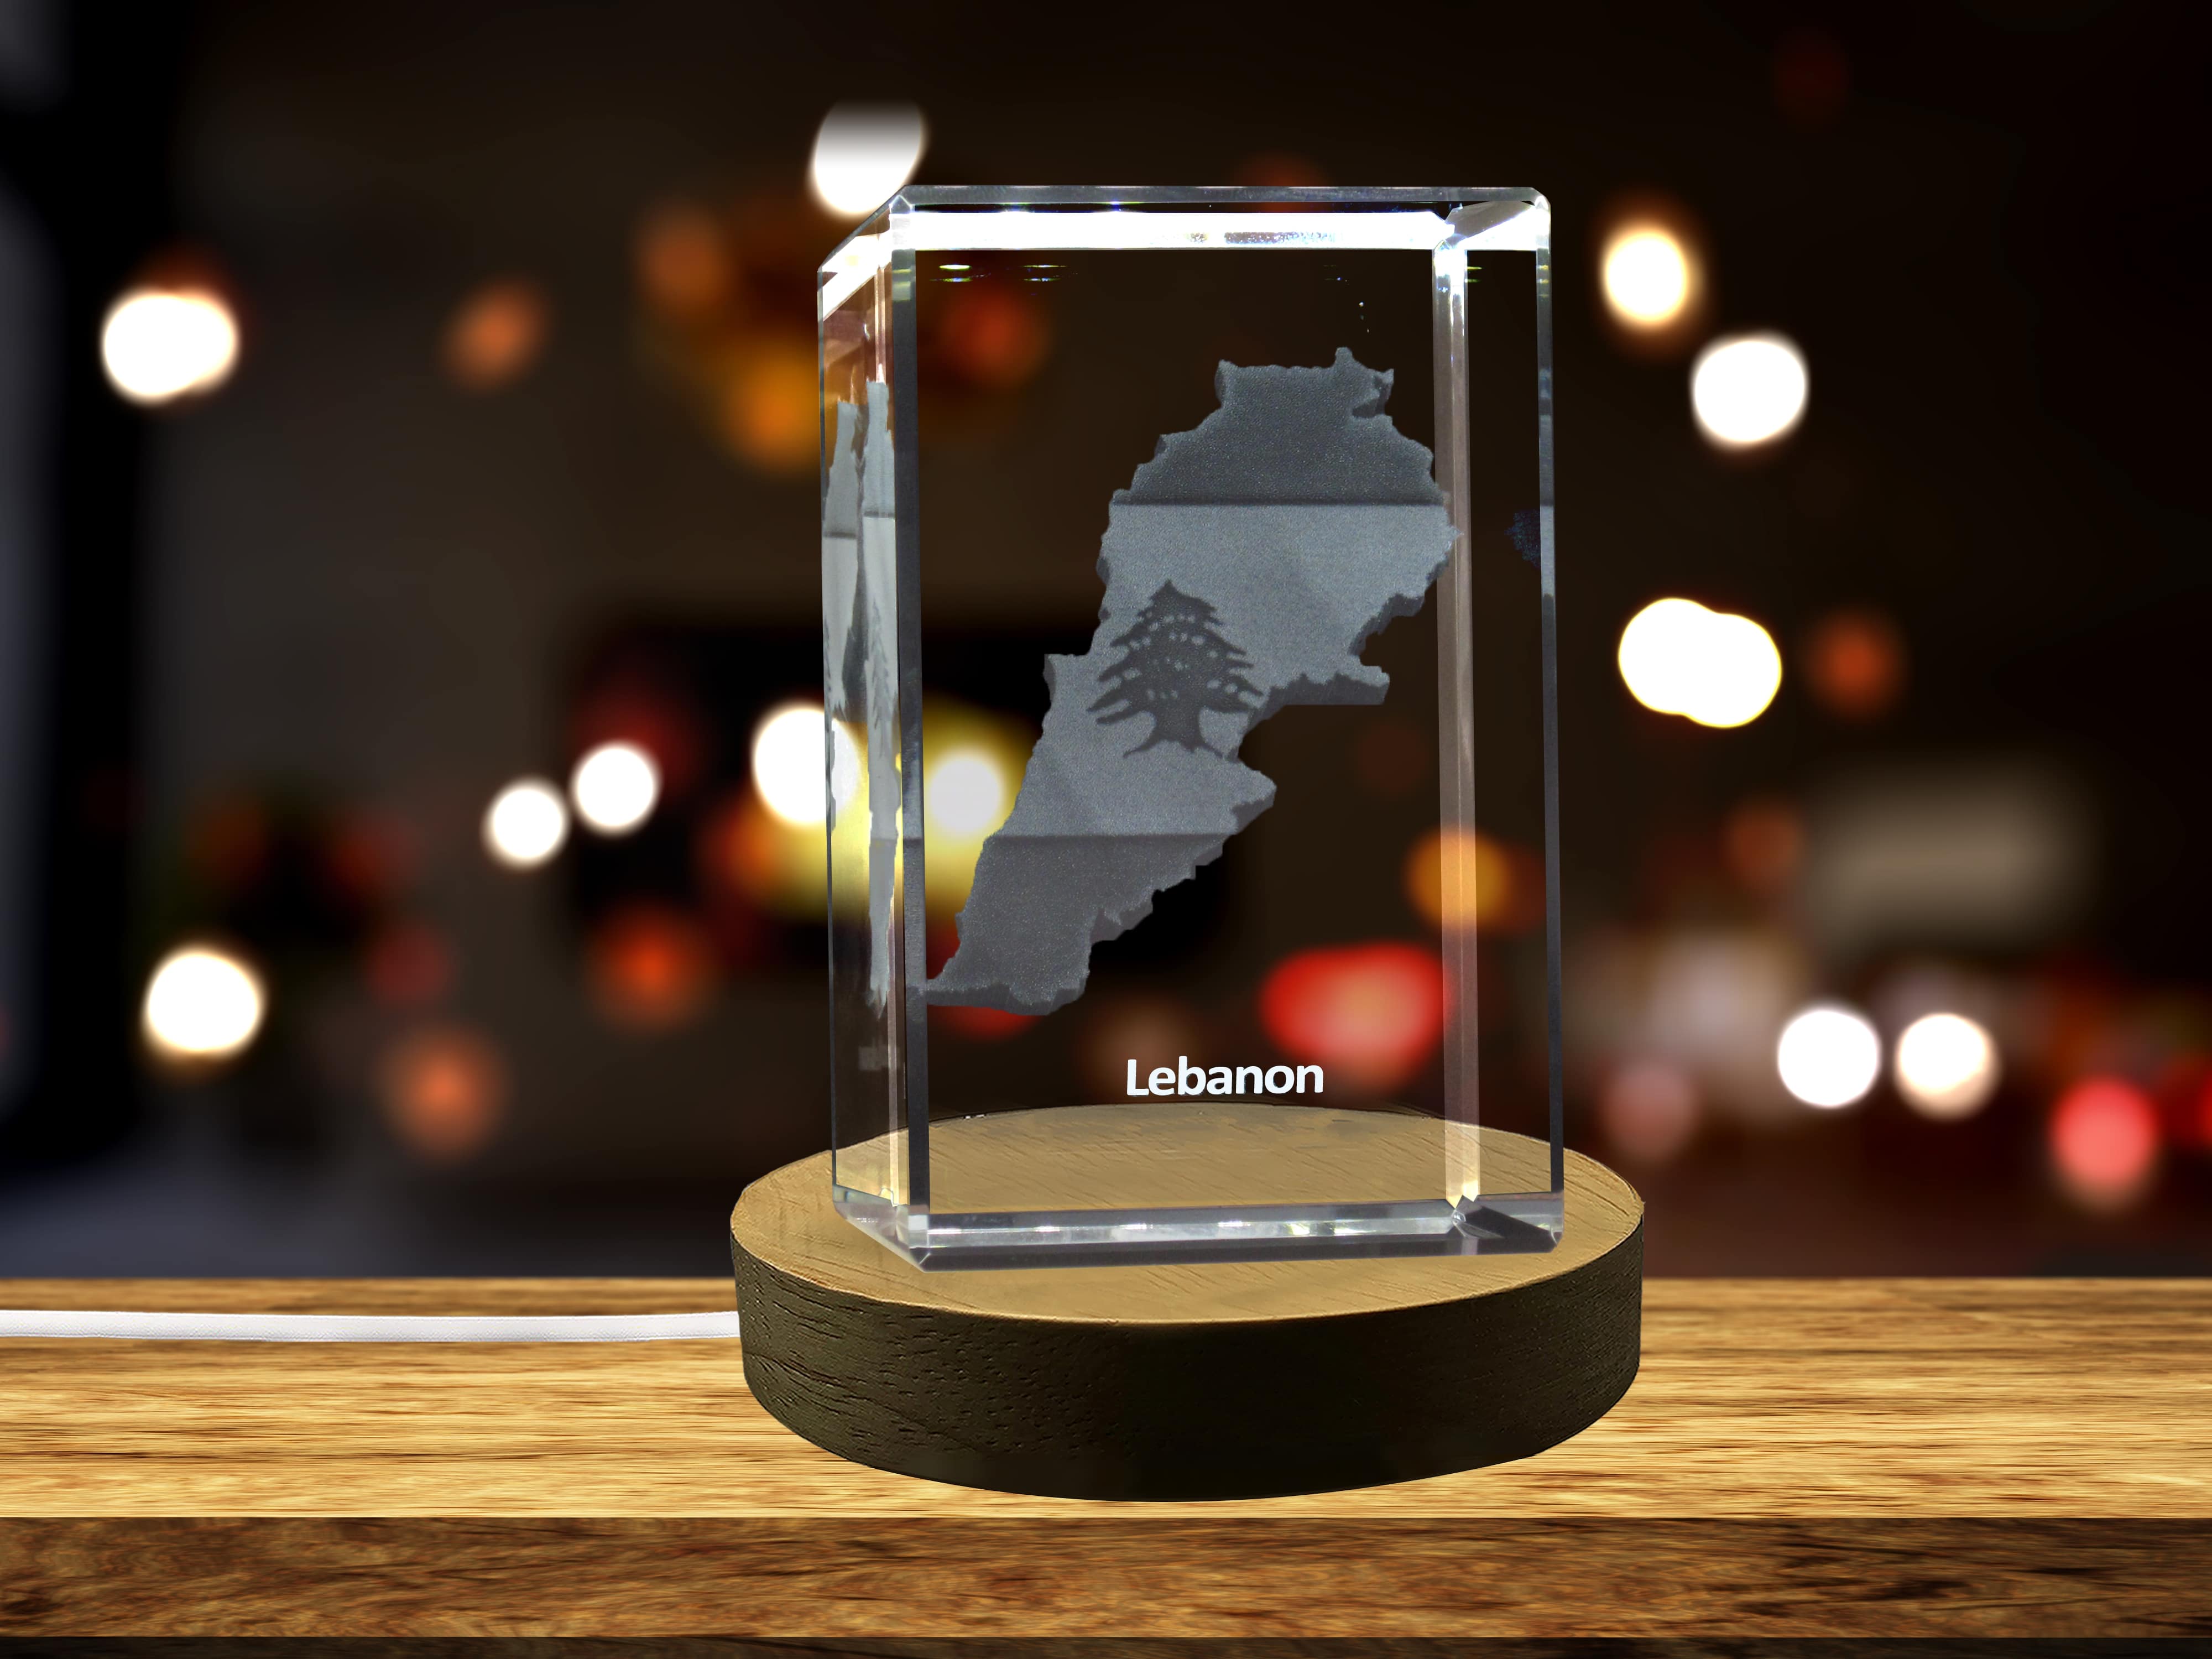 Lebanon 3D Engraved Crystal 3D Engraved Crystal Keepsake/Gift/Decor/Collectible/Souvenir A&B Crystal Collection